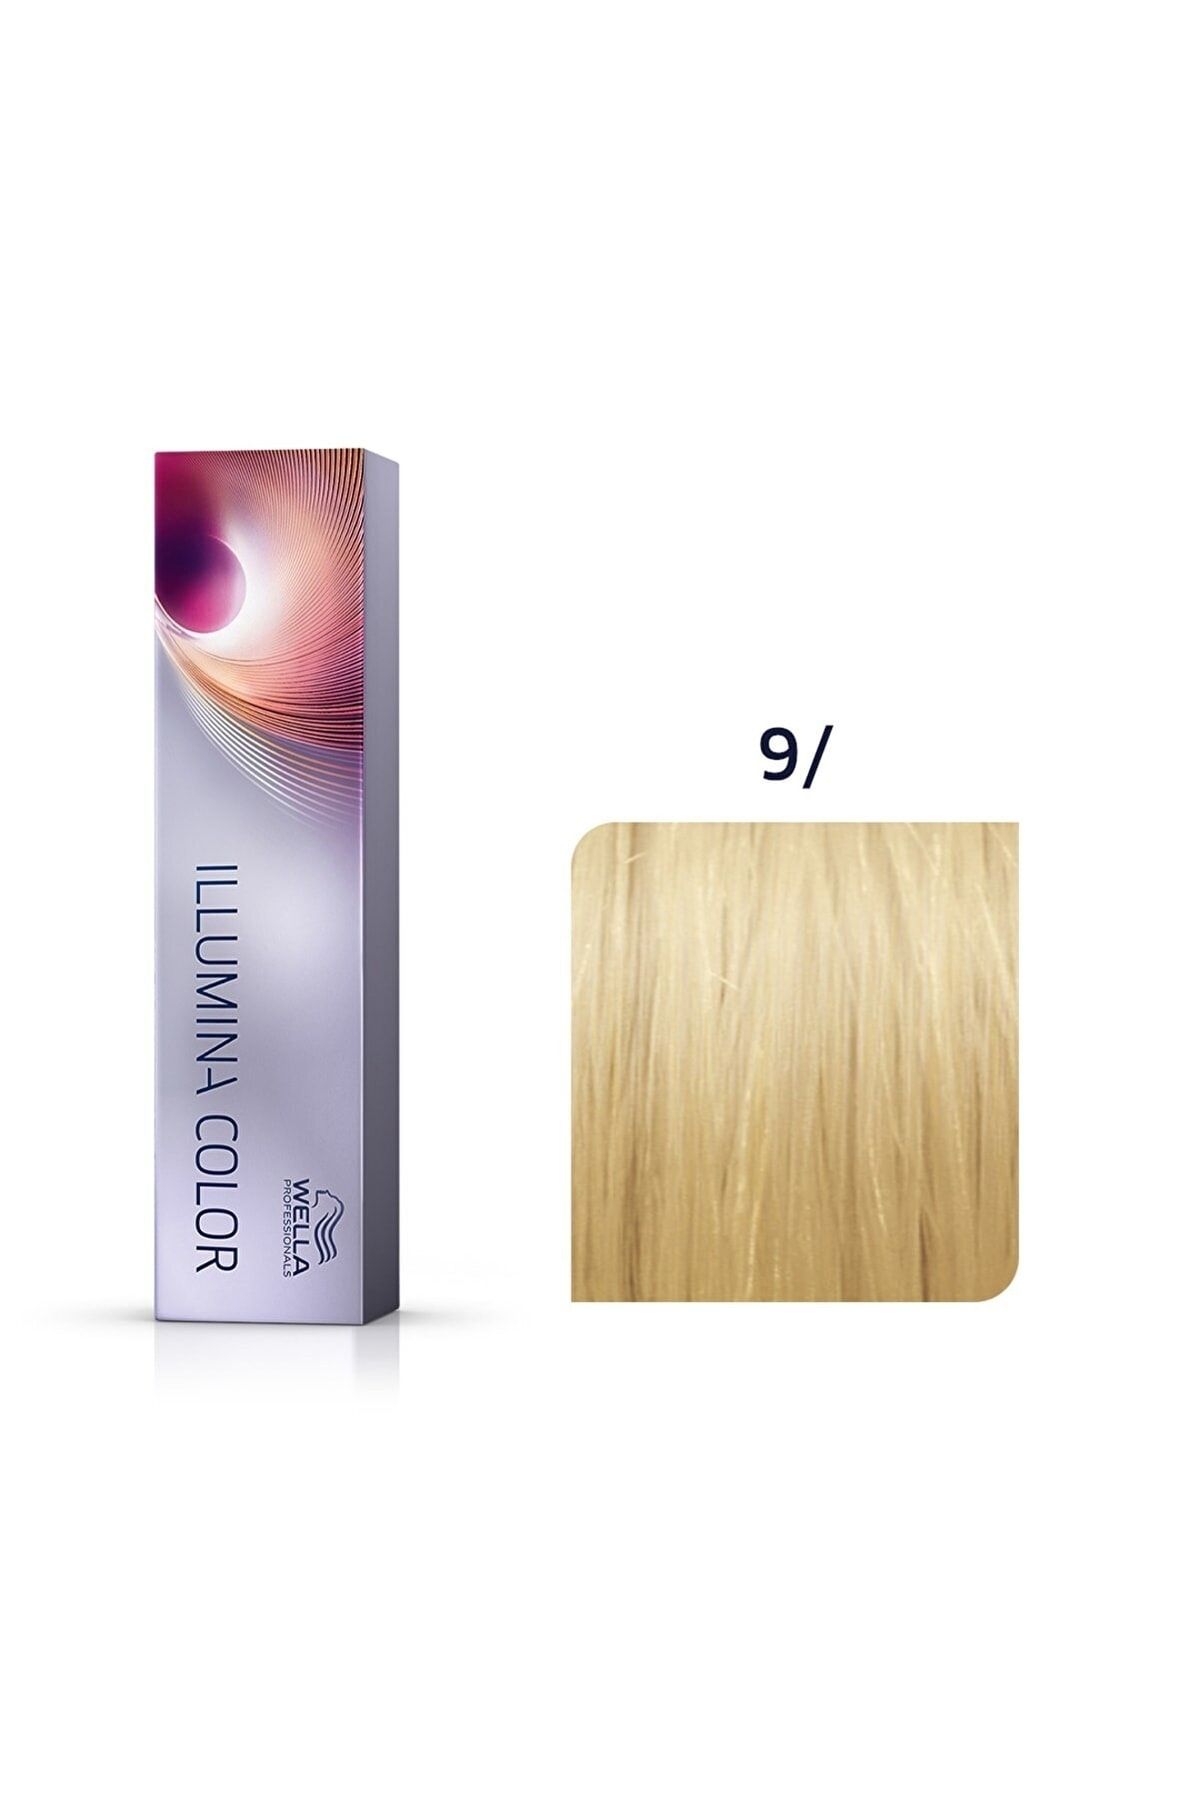 Wella Illumina Color Süper 9/ Çok Açık Kumral Saç Boyası 60ml.. KeyÜrün677